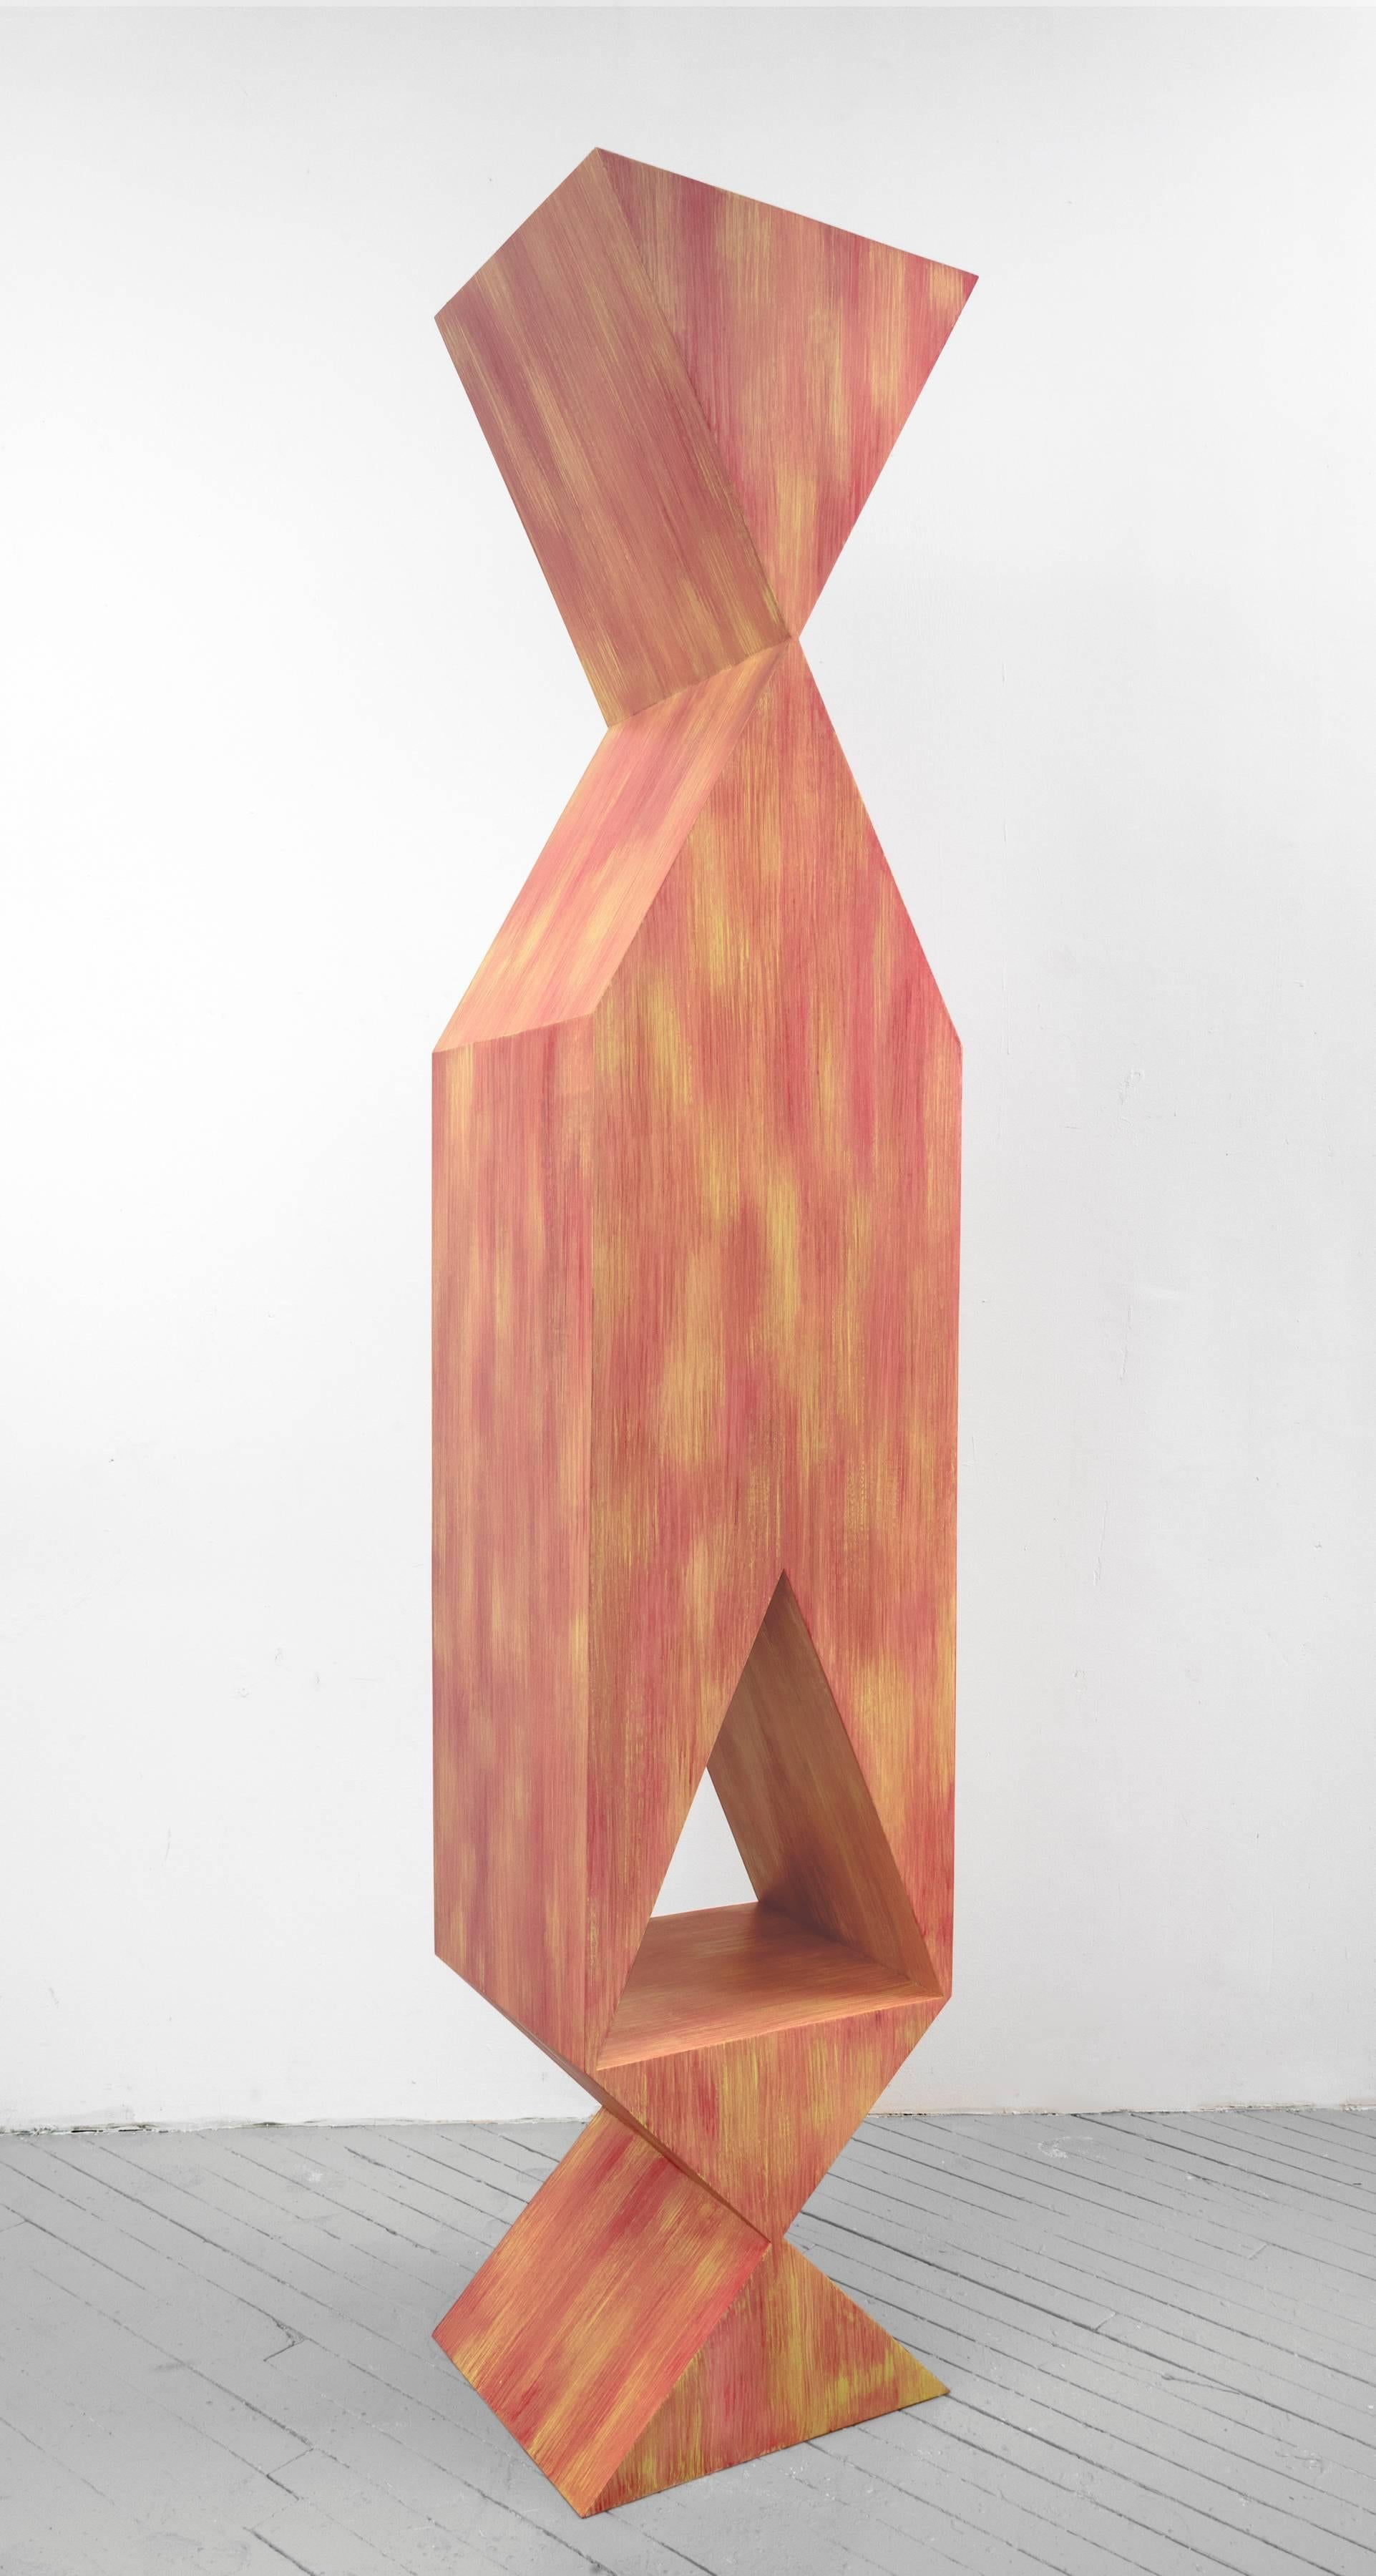 Rachel Beach Abstract Sculpture - Reynard